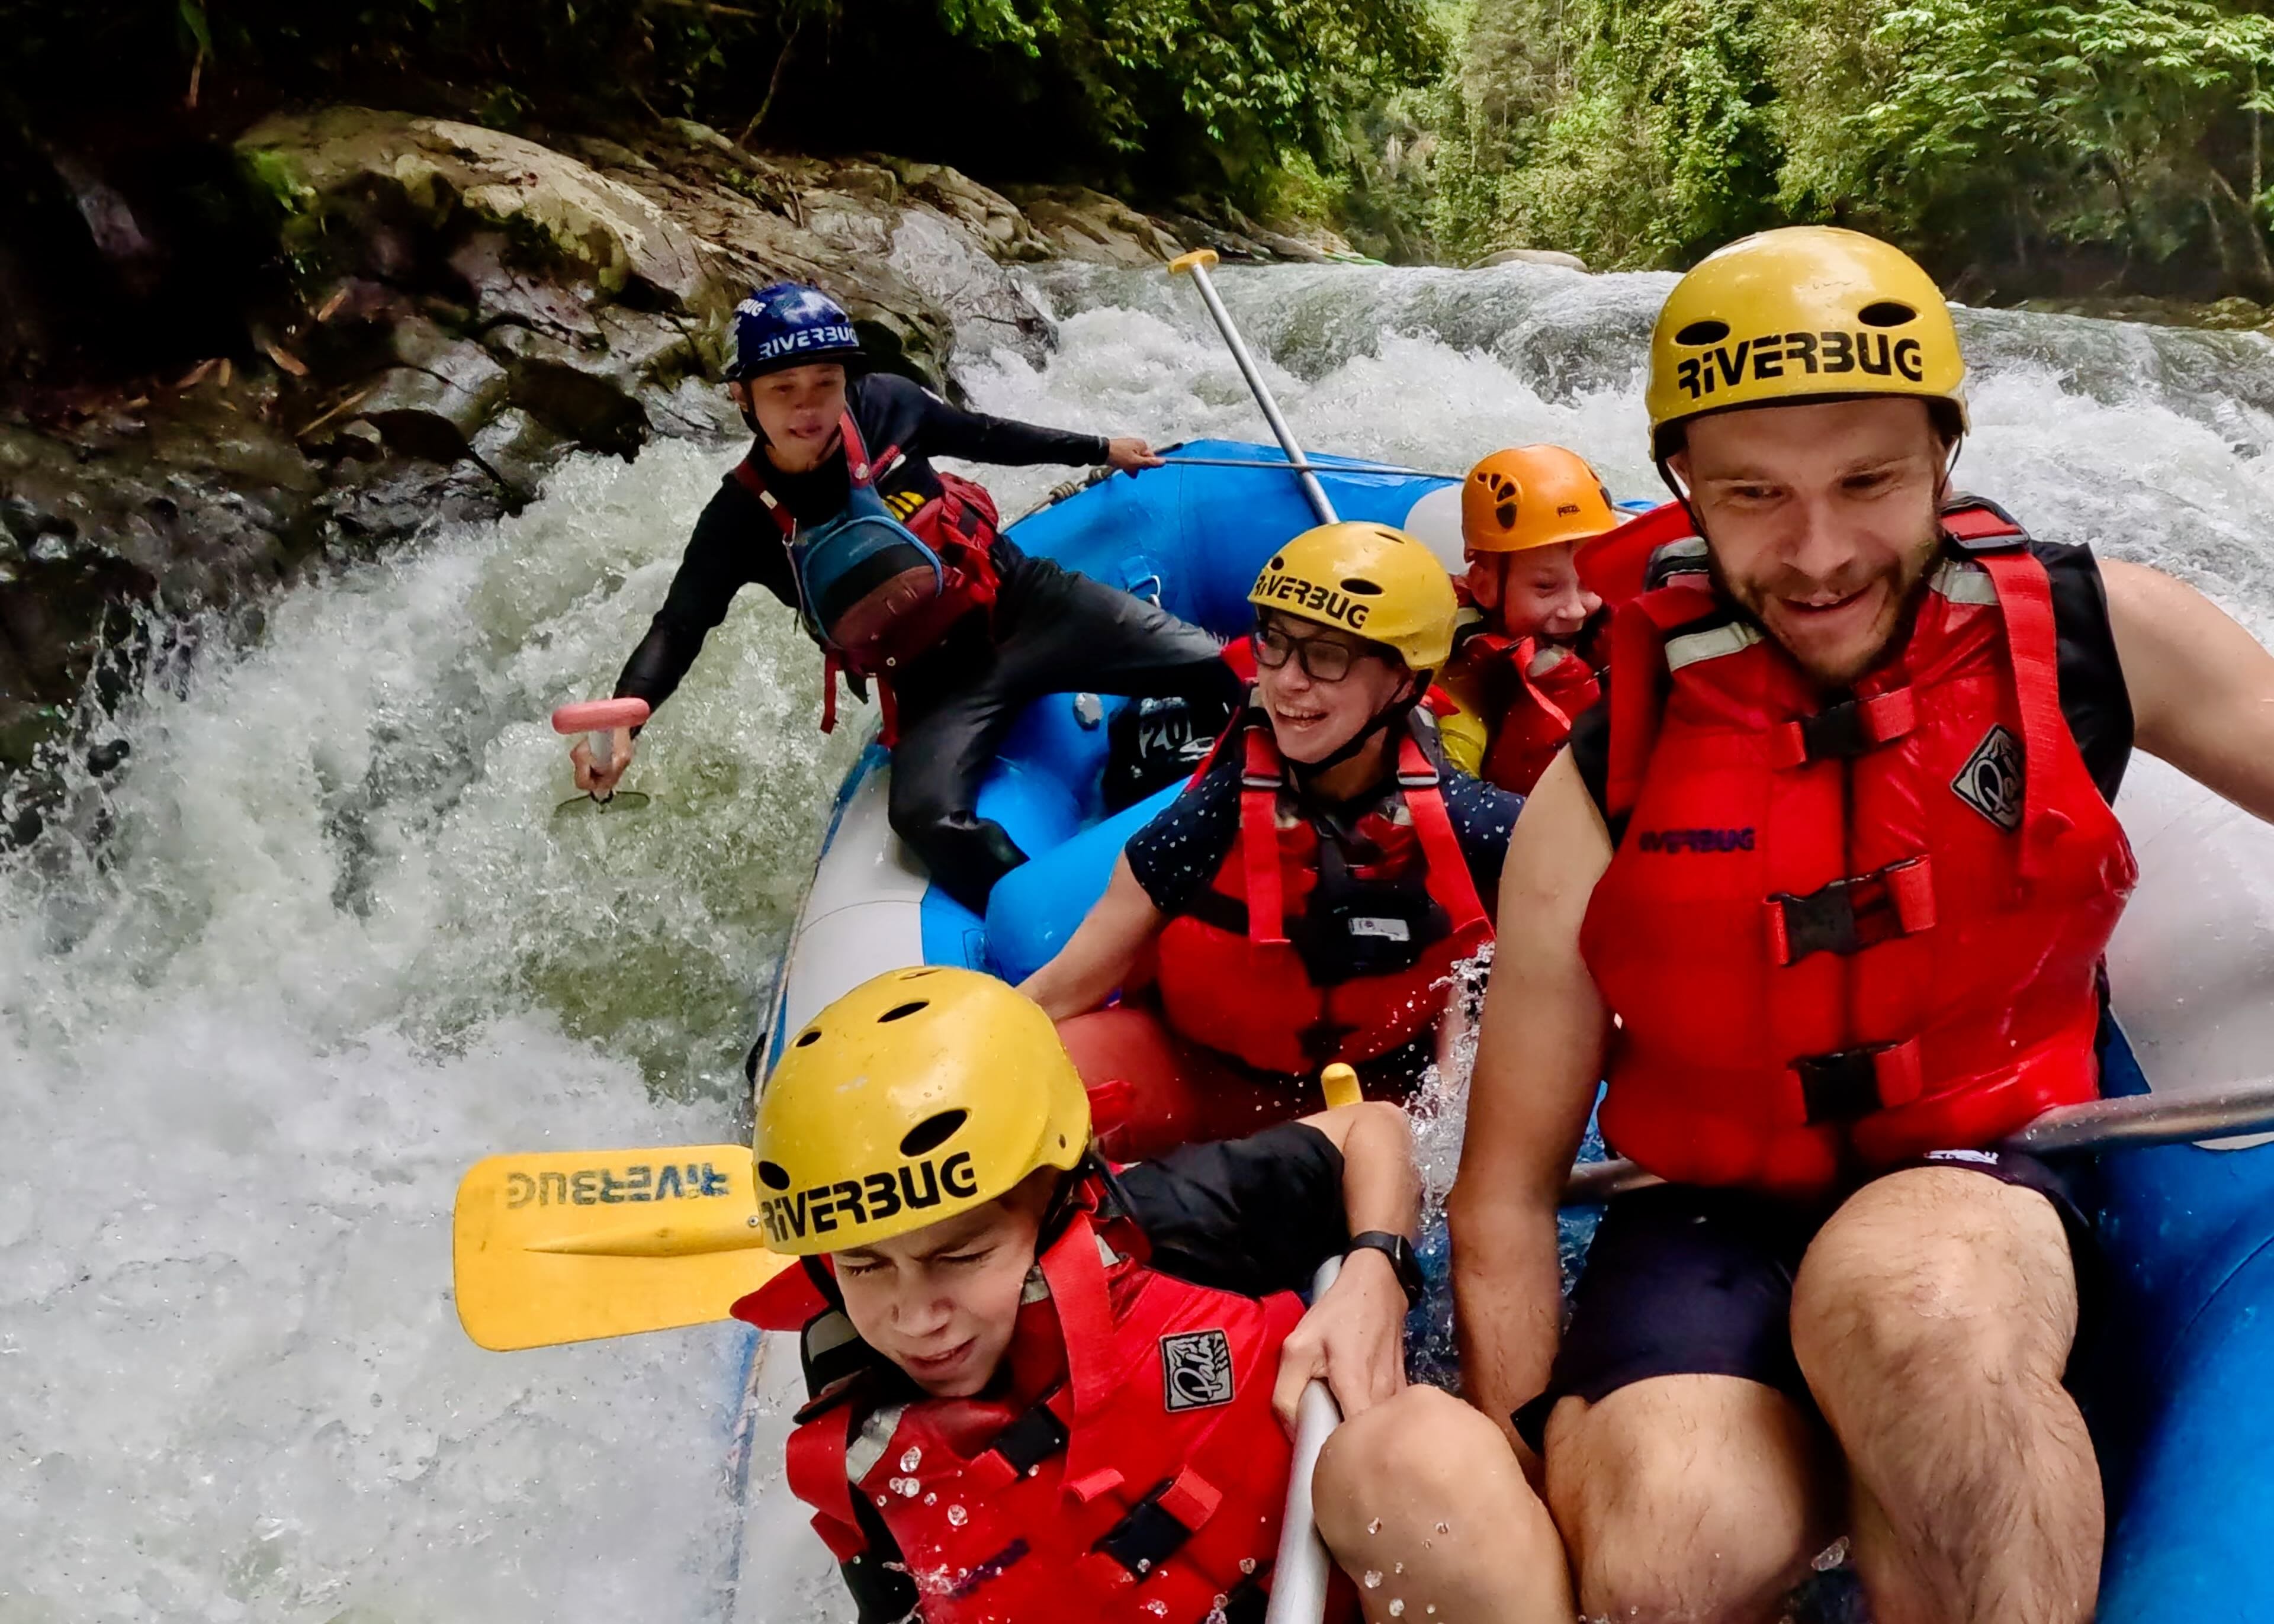 Urlaub mit Jugendlichen - Urlaub mit pubertierenden Kindern - Reiseziele für Jugendliche - Aktivurlaub mit Teenagern - Malaysia Rafting